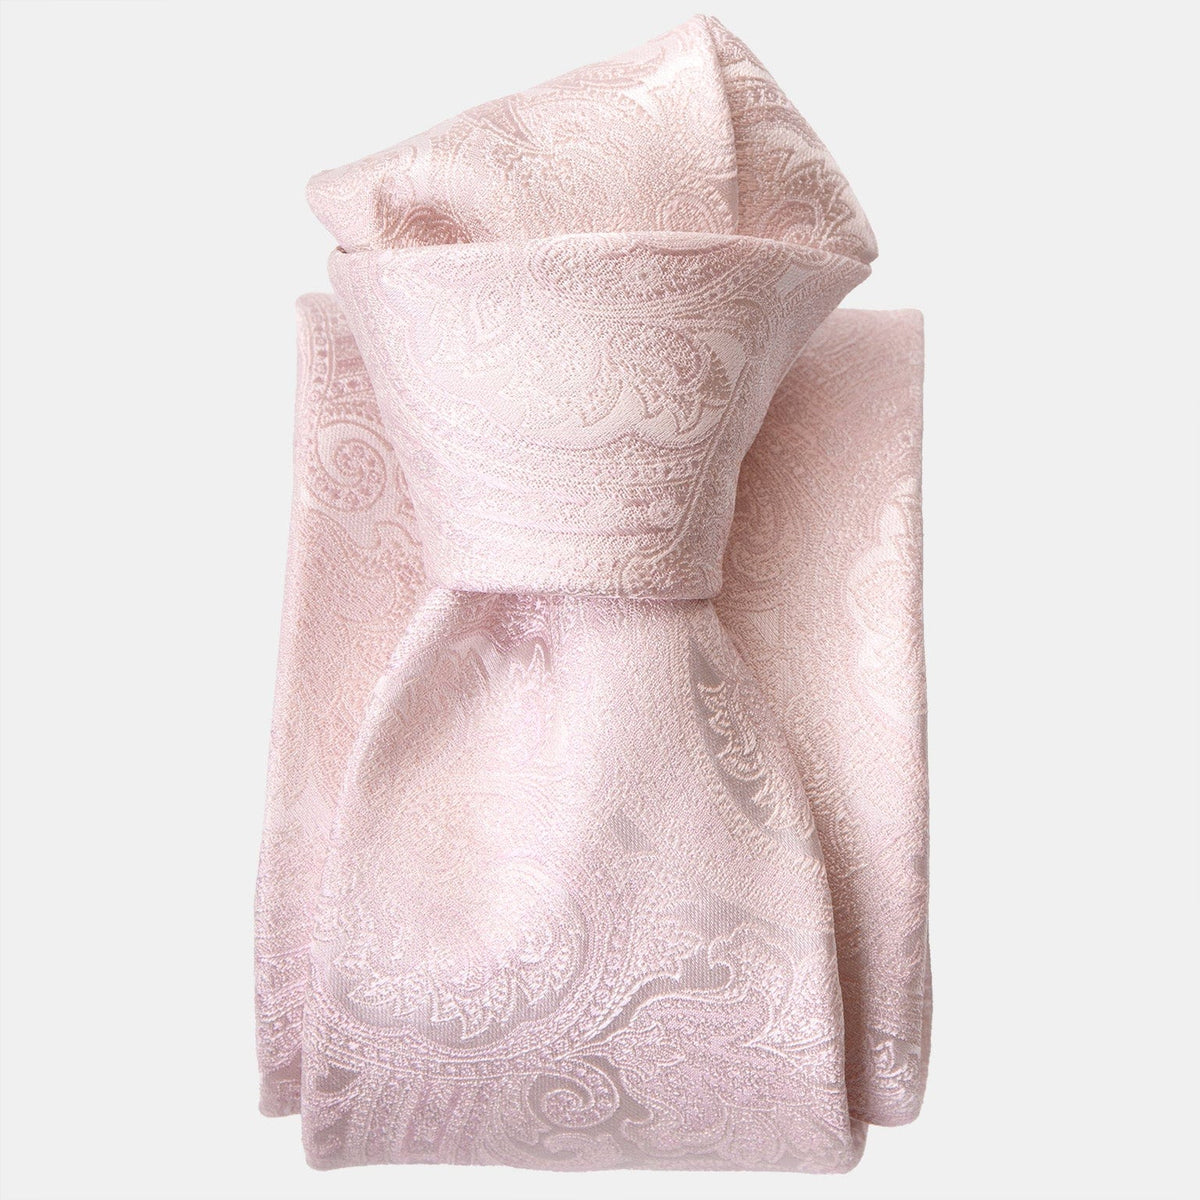 Luxury woven pink paisley handmade italian silk tie